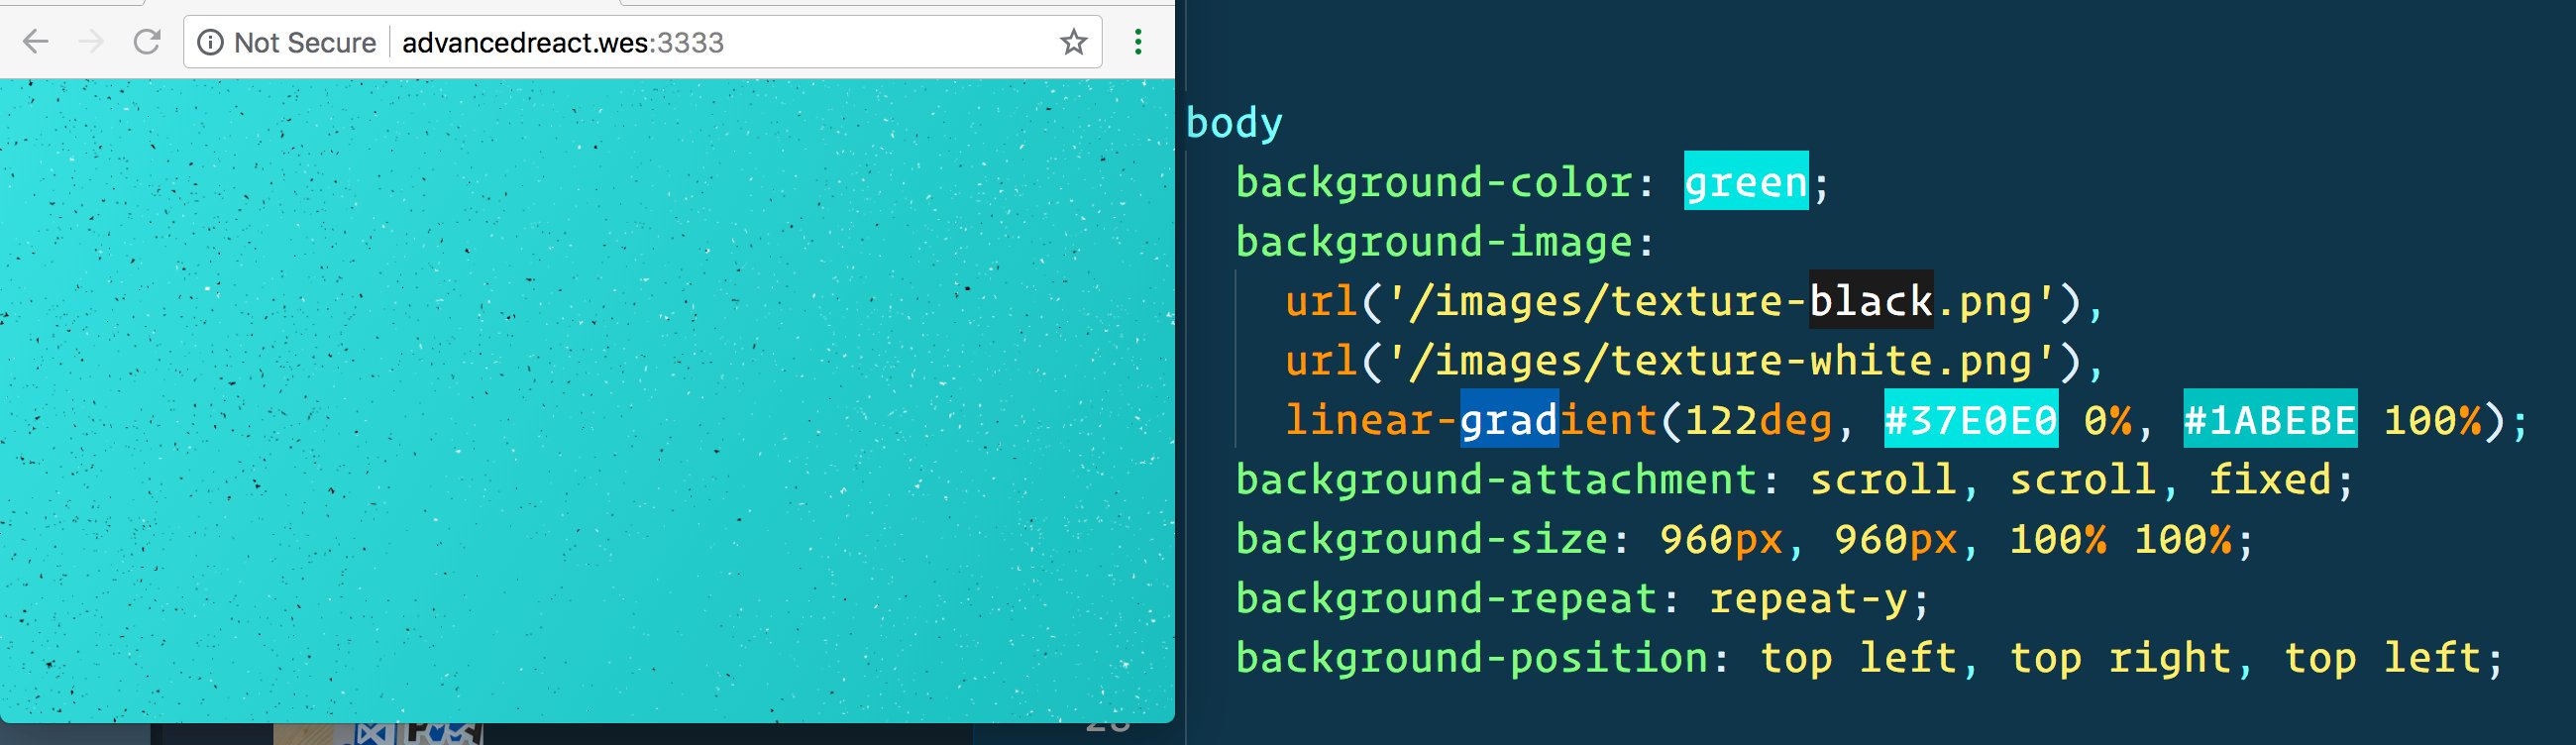 CSS background properties: CSS là một phần rất quan trọng của thiết kế web, đặc biệt là đối với các thuộc tính nền. Hãy xem qua hình ảnh liên quan đến CSS background properties để tìm hiểu thêm về cách tùy chỉnh nền của trang web một cách chuyên nghiệp. Nền tốt có thể giúp tăng tính hấp dẫn và giúp trang web của bạn trở nên chuyên nghiệp hơn.